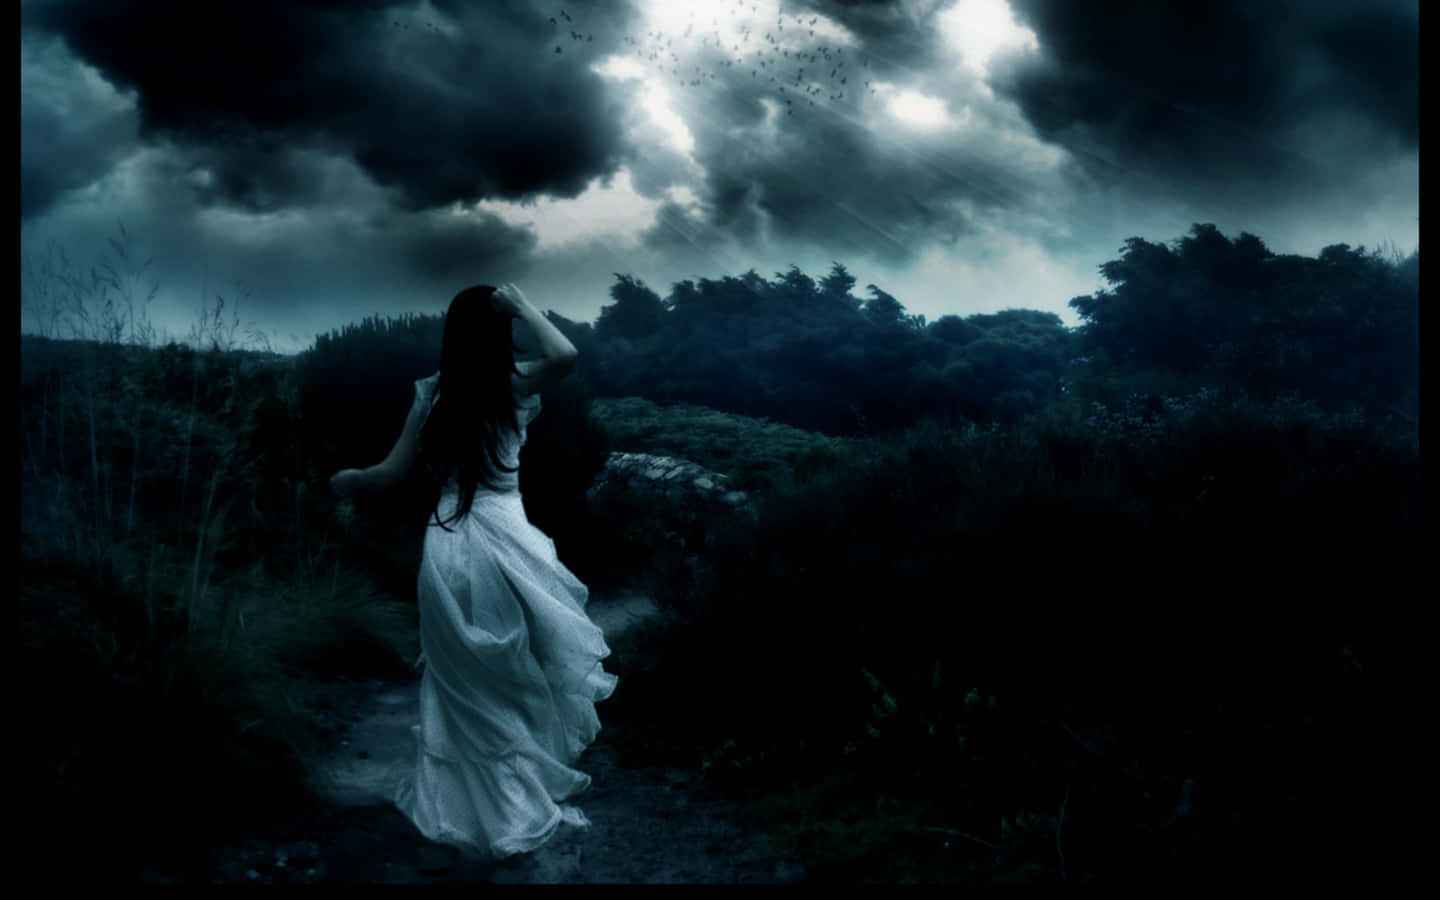 Imagende Una Mujer Triste Y Sola En Un Mundo De Fantasía Oscuro.